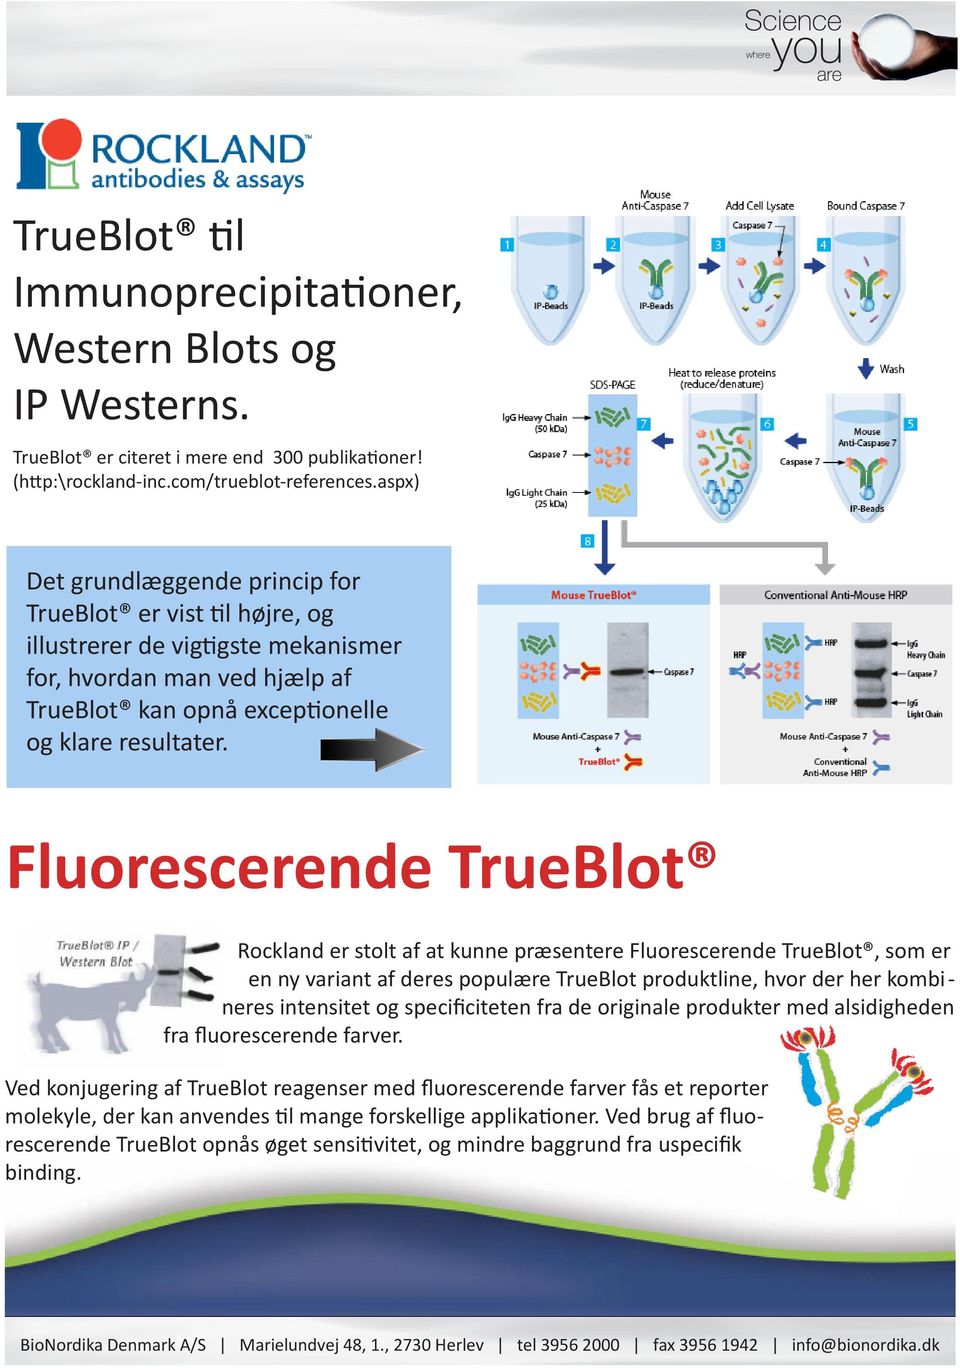 Fluorescerende TrueBlot Rockland er stolt af at kunne præsentere Fluorescerende TrueBlot, som er en ny variant af deres populære TrueBlot produktline, hvor der her kombi - neres intensitet og